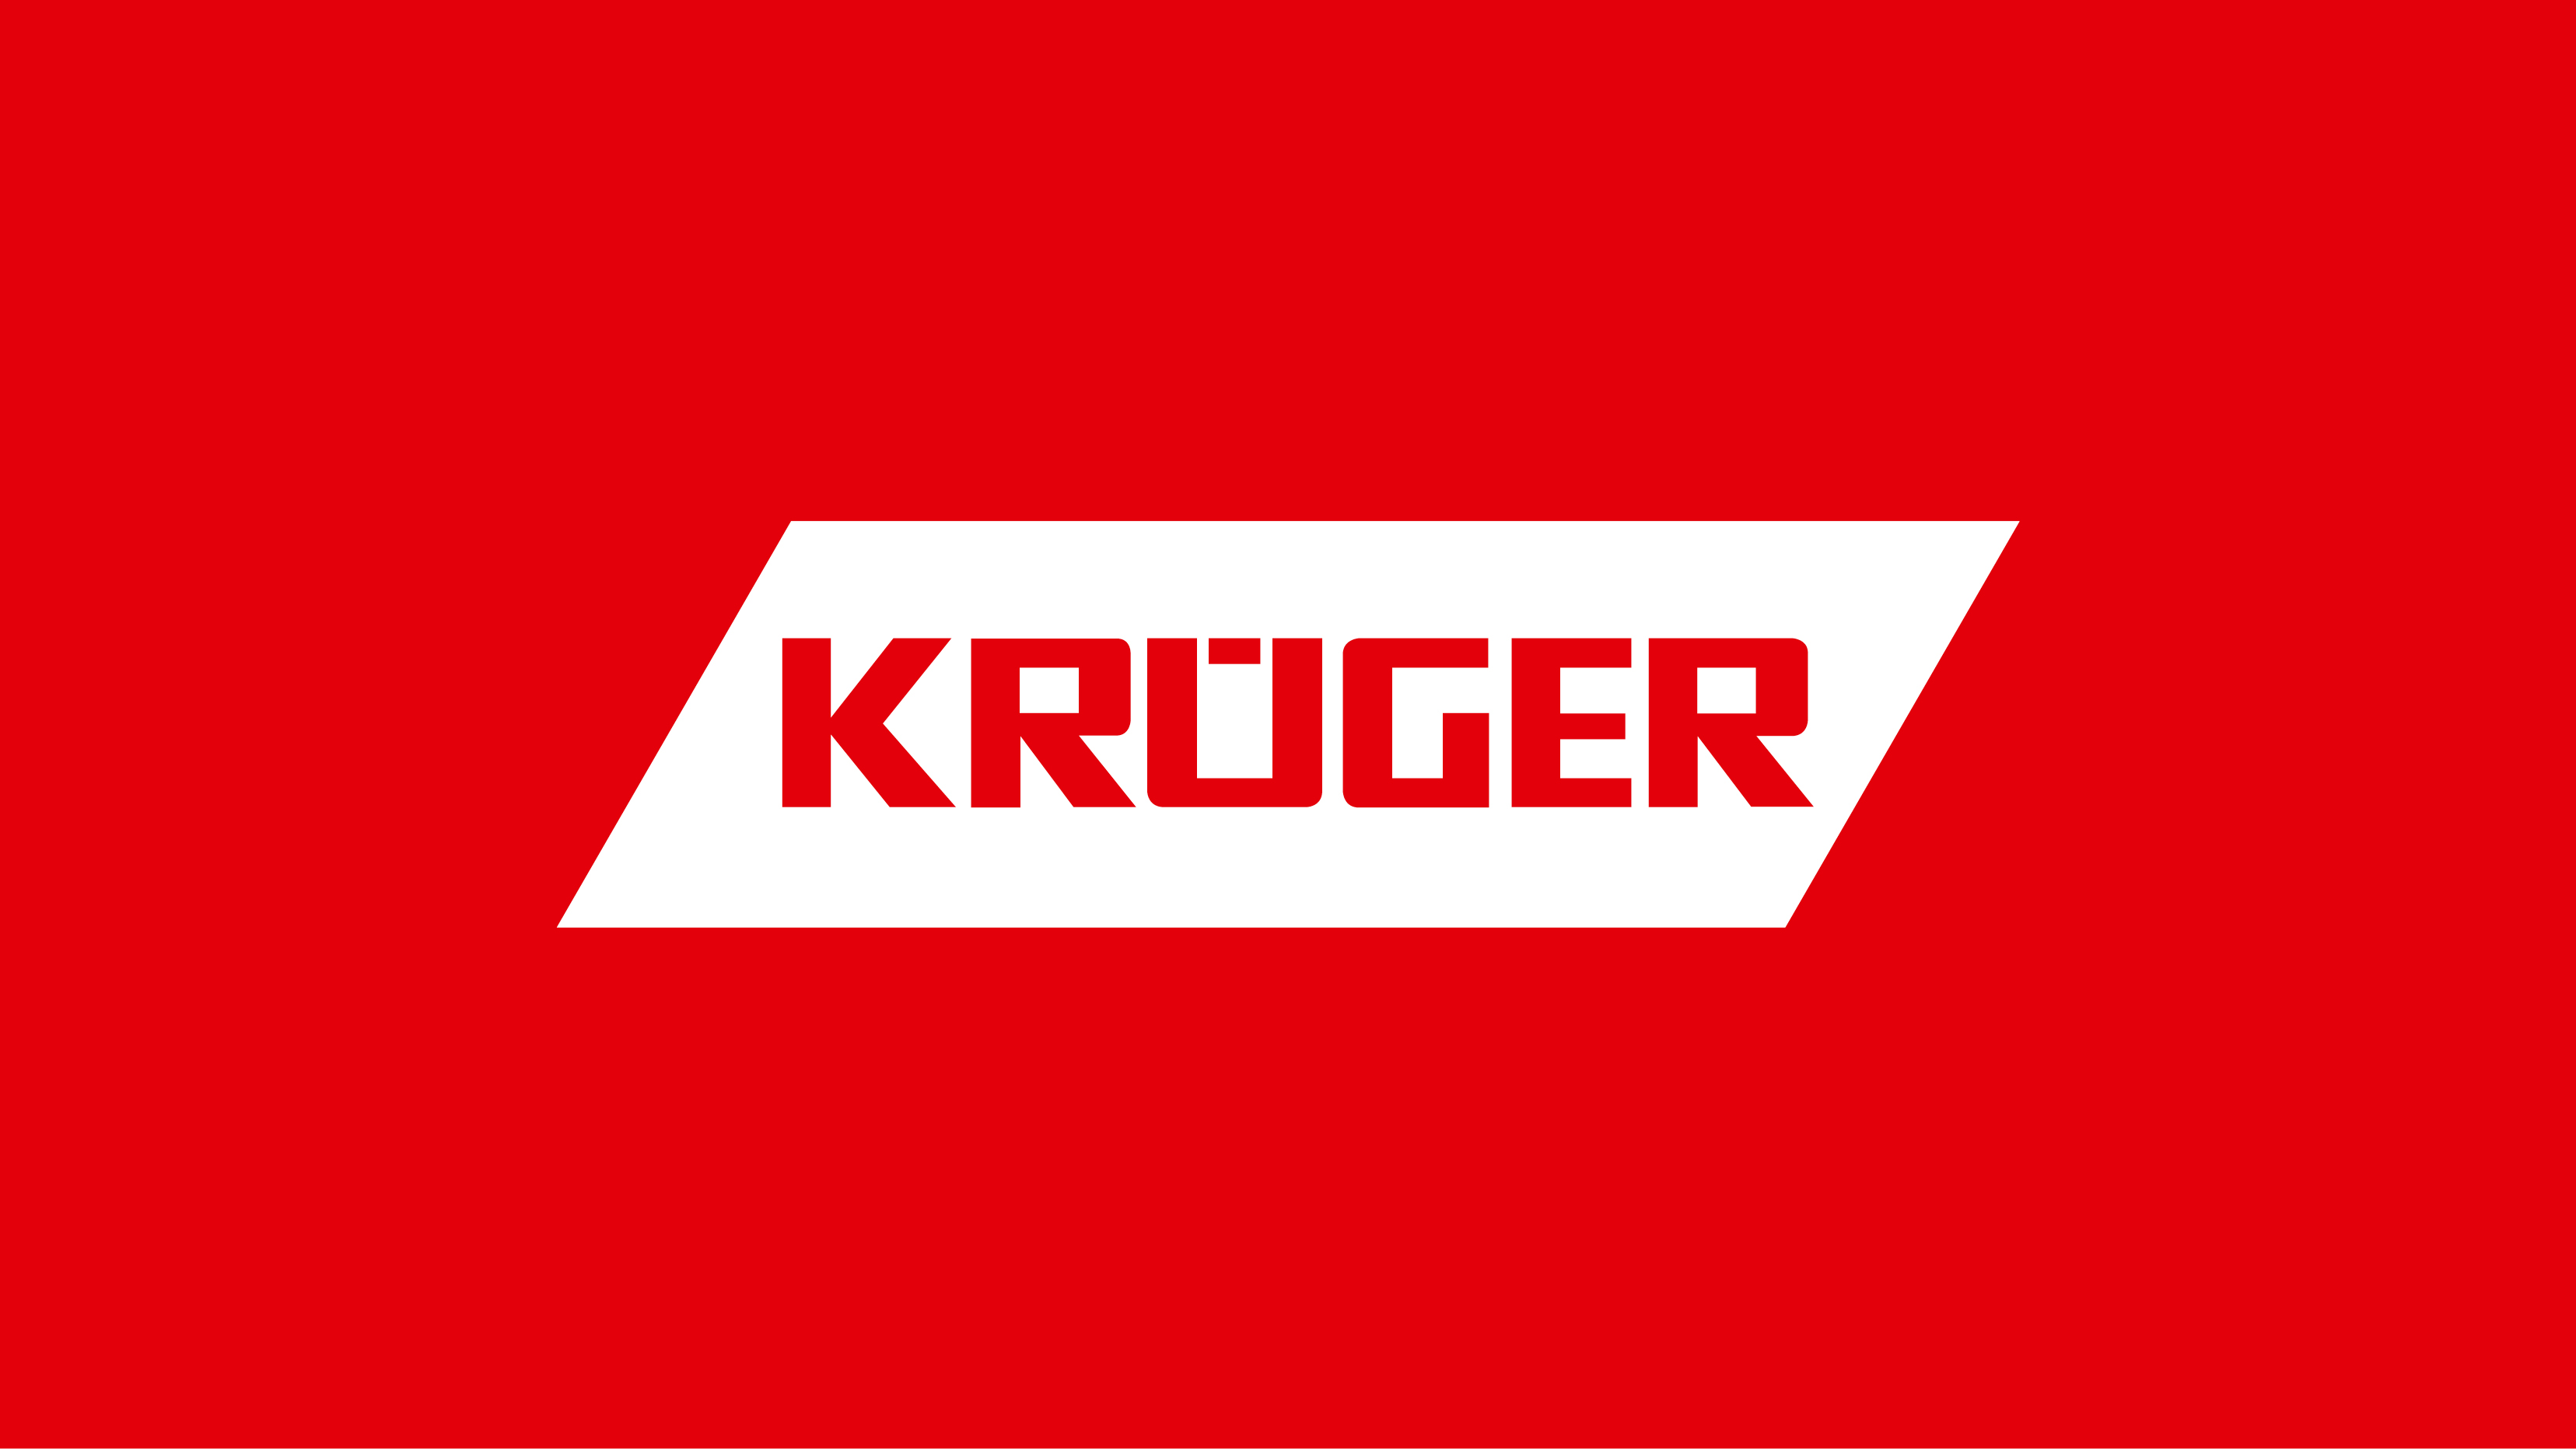 Krüger + Co. AG